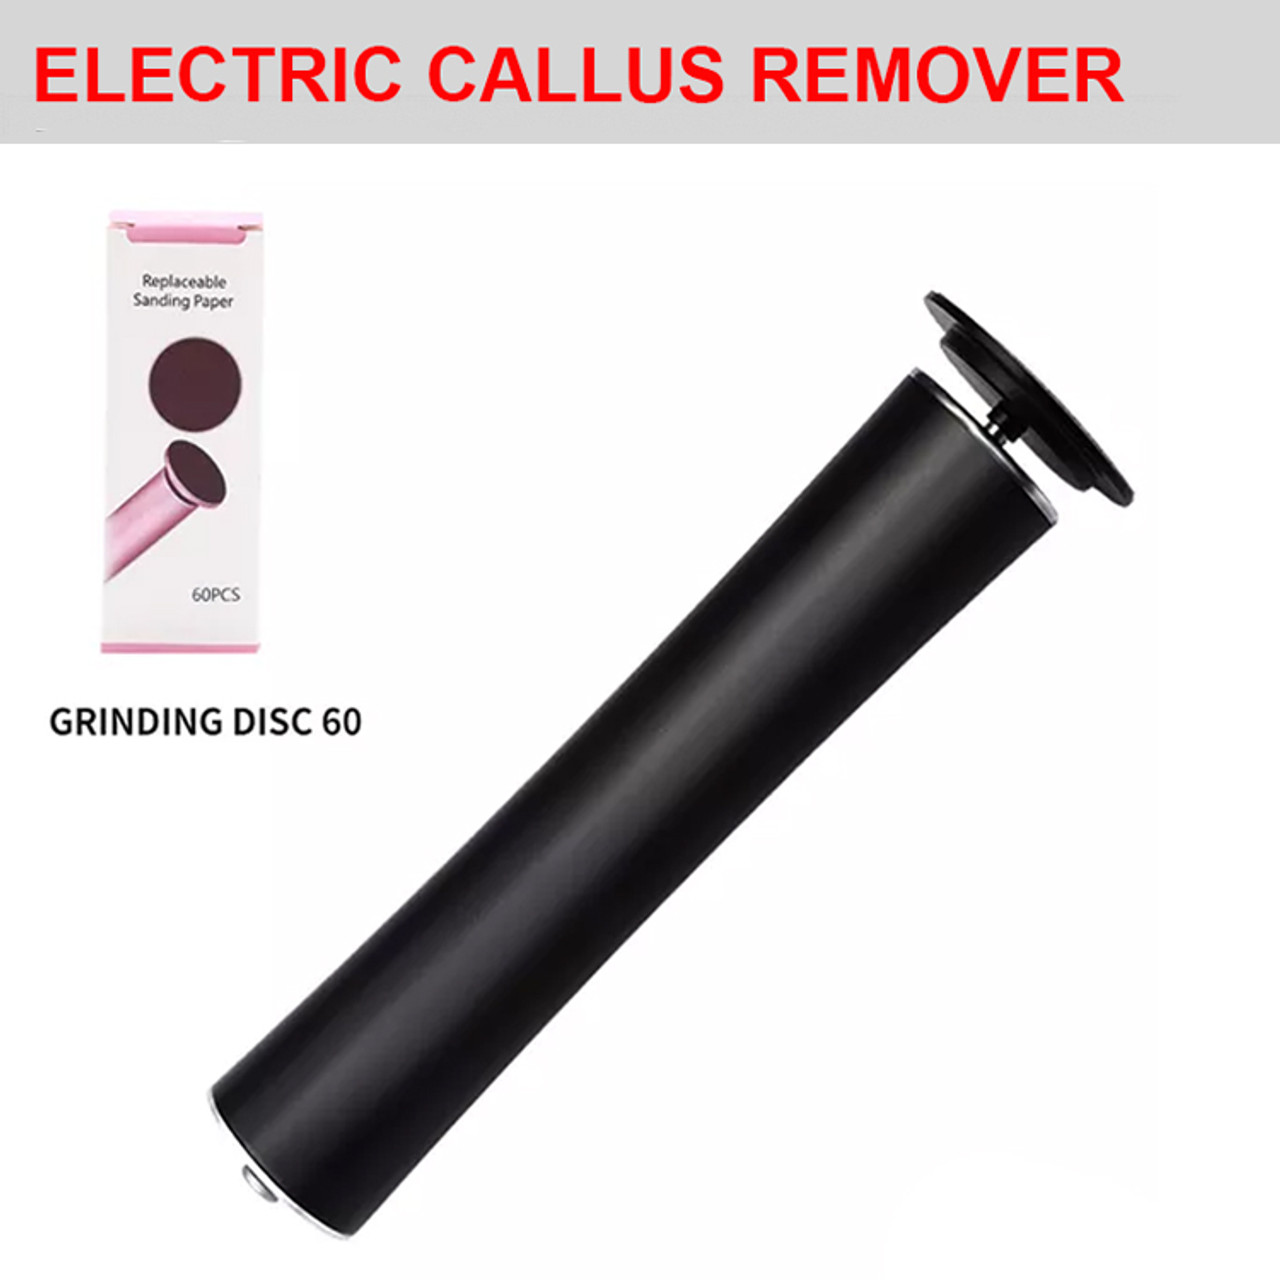 Electric Callus Remover User Guide